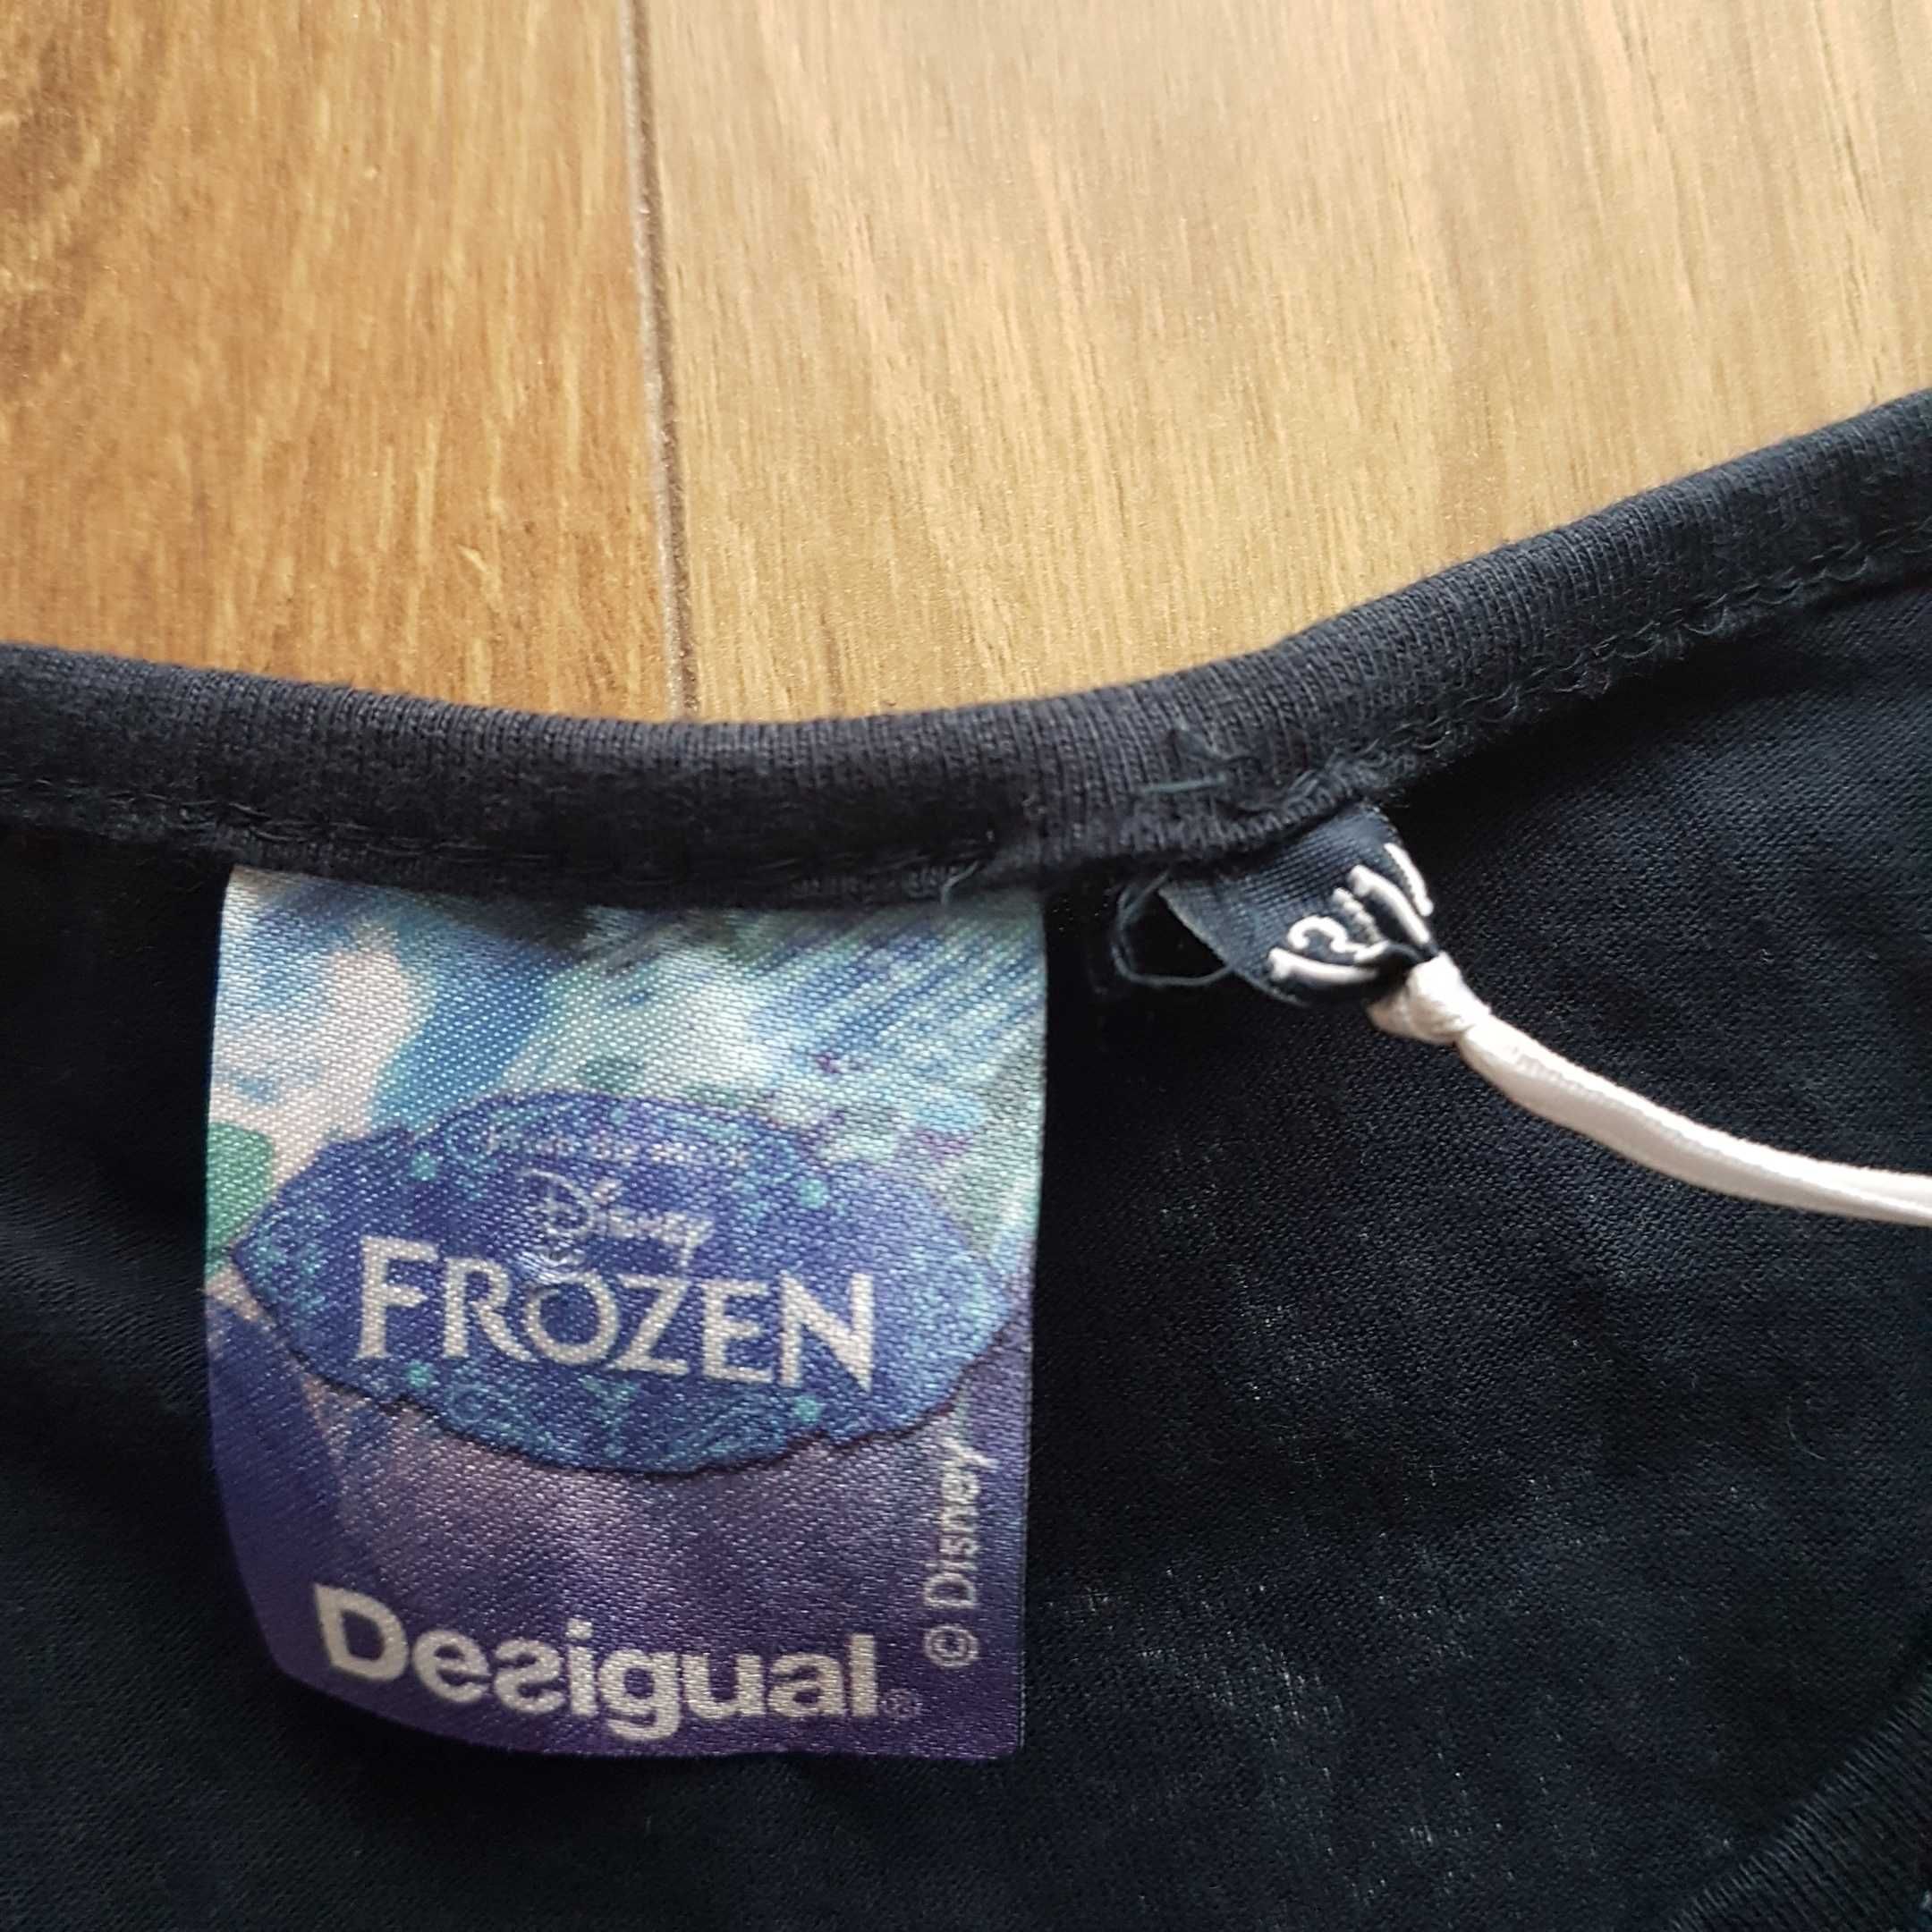 Bluza Desingual  Frozen 13-14 ani